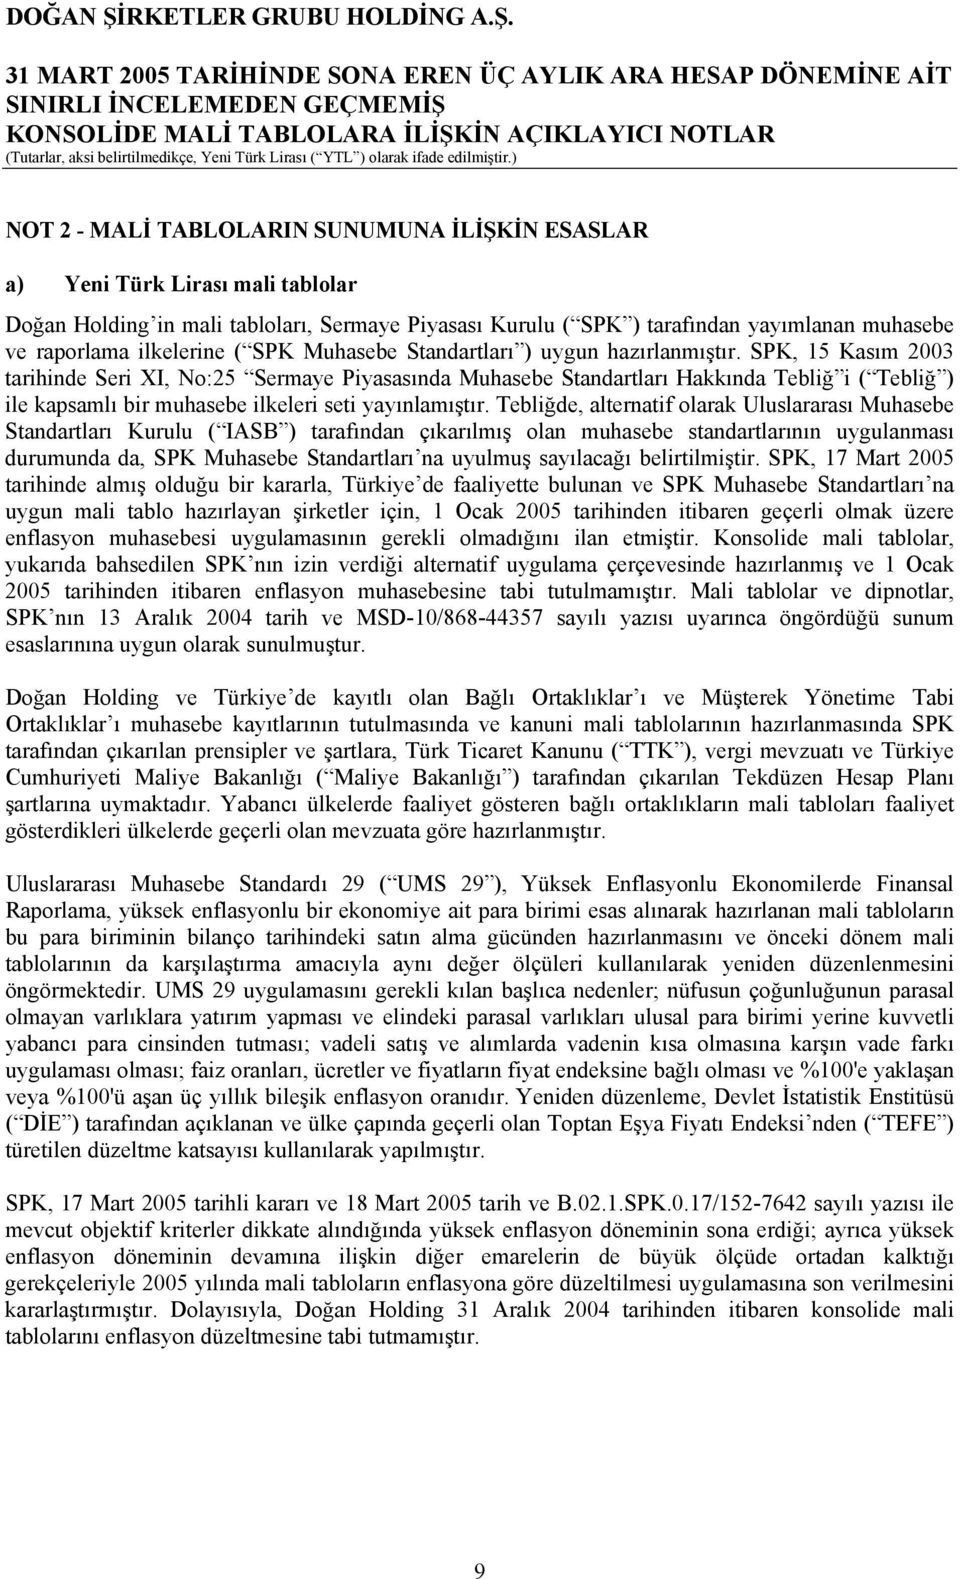 SPK, 15 Kasım 2003 tarihinde Seri XI, No:25 Sermaye Piyasasında Muhasebe Standartları Hakkında Tebliğ i ( Tebliğ ) ile kapsamlı bir muhasebe ilkeleri seti yayınlamıştır.